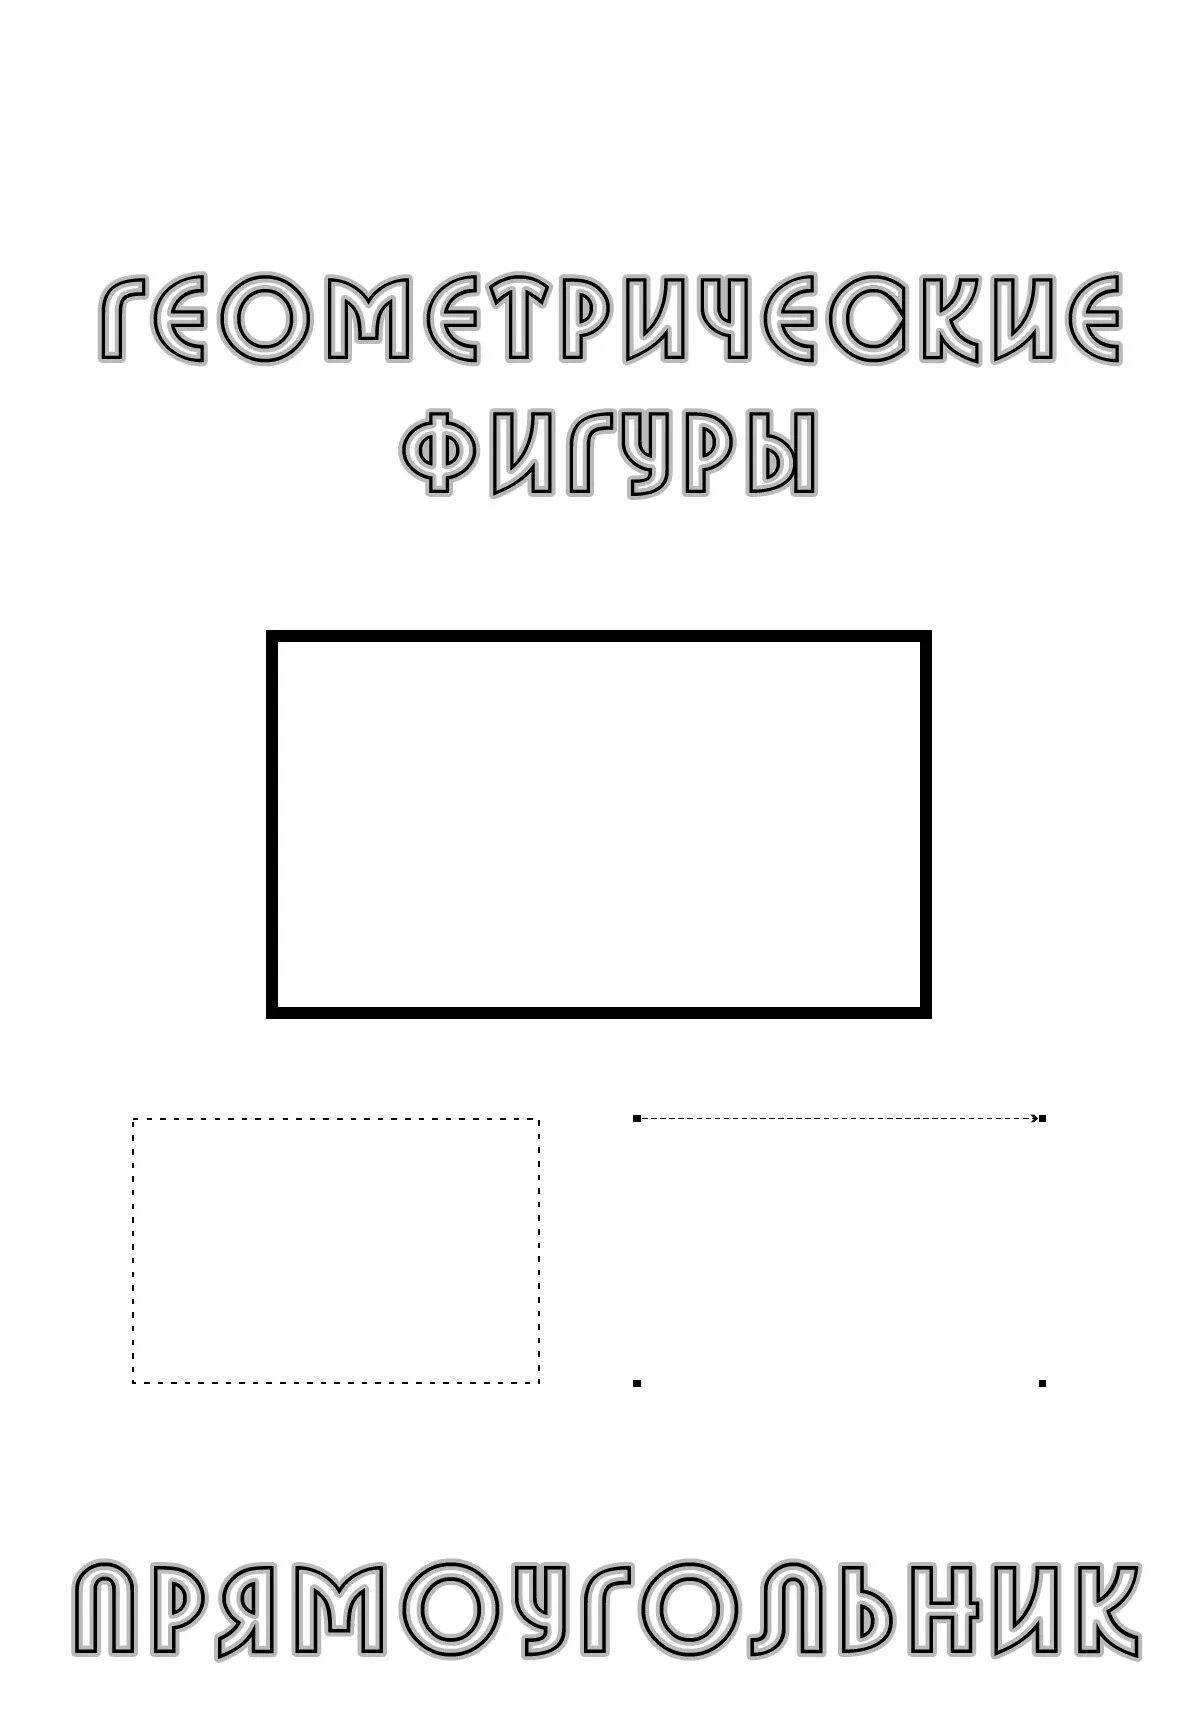 Children's rectangle #5